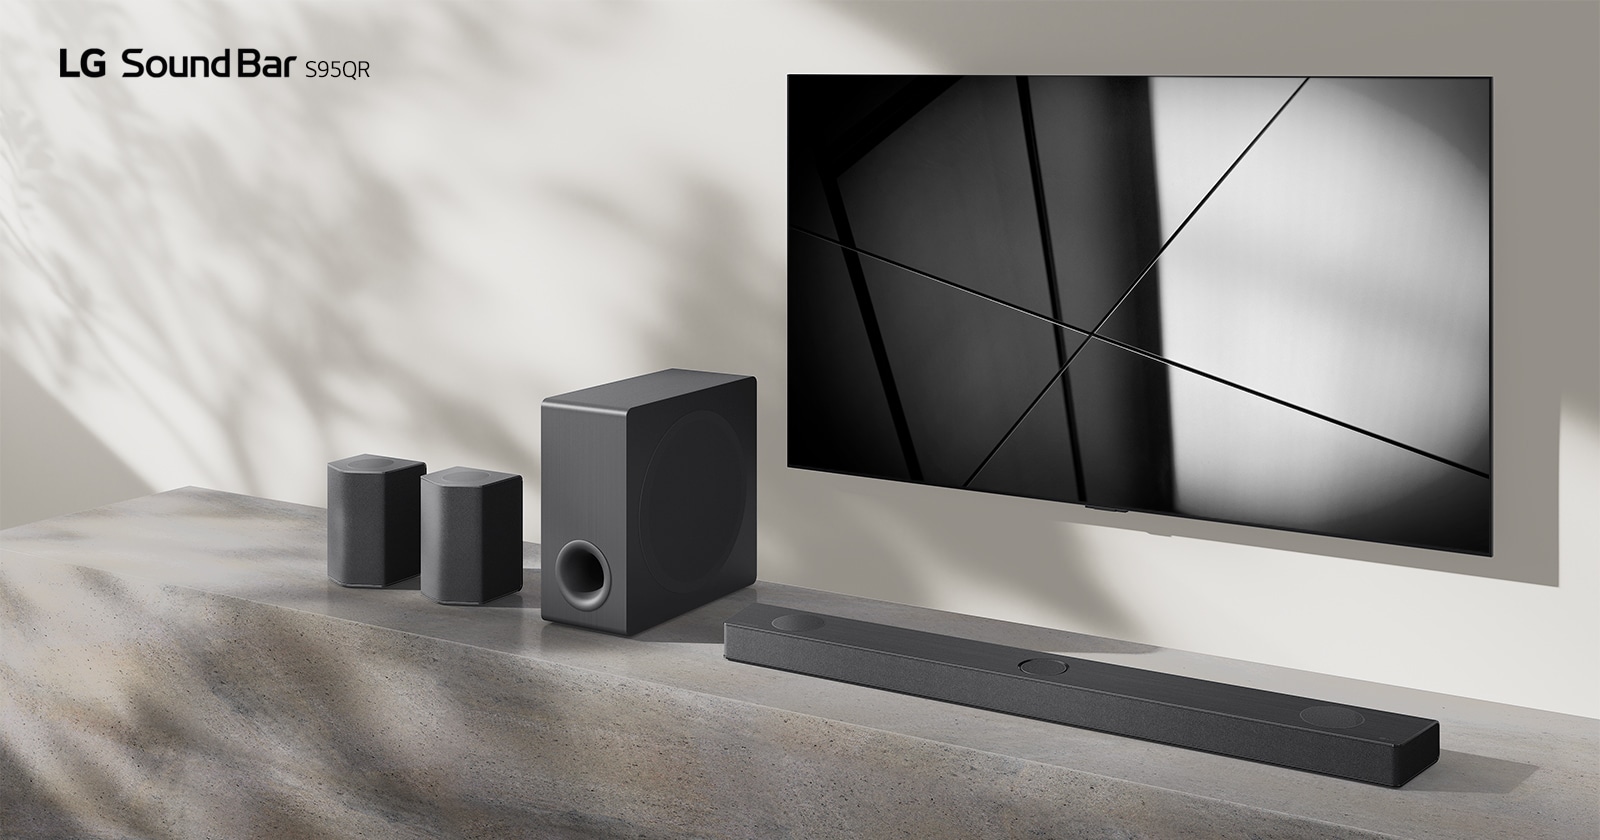 La barre de son S95QR de LG et le téléviseur LG sont placés ensemble dans le salon. Le téléviseur est allumé et projette une image en noir et blanc.